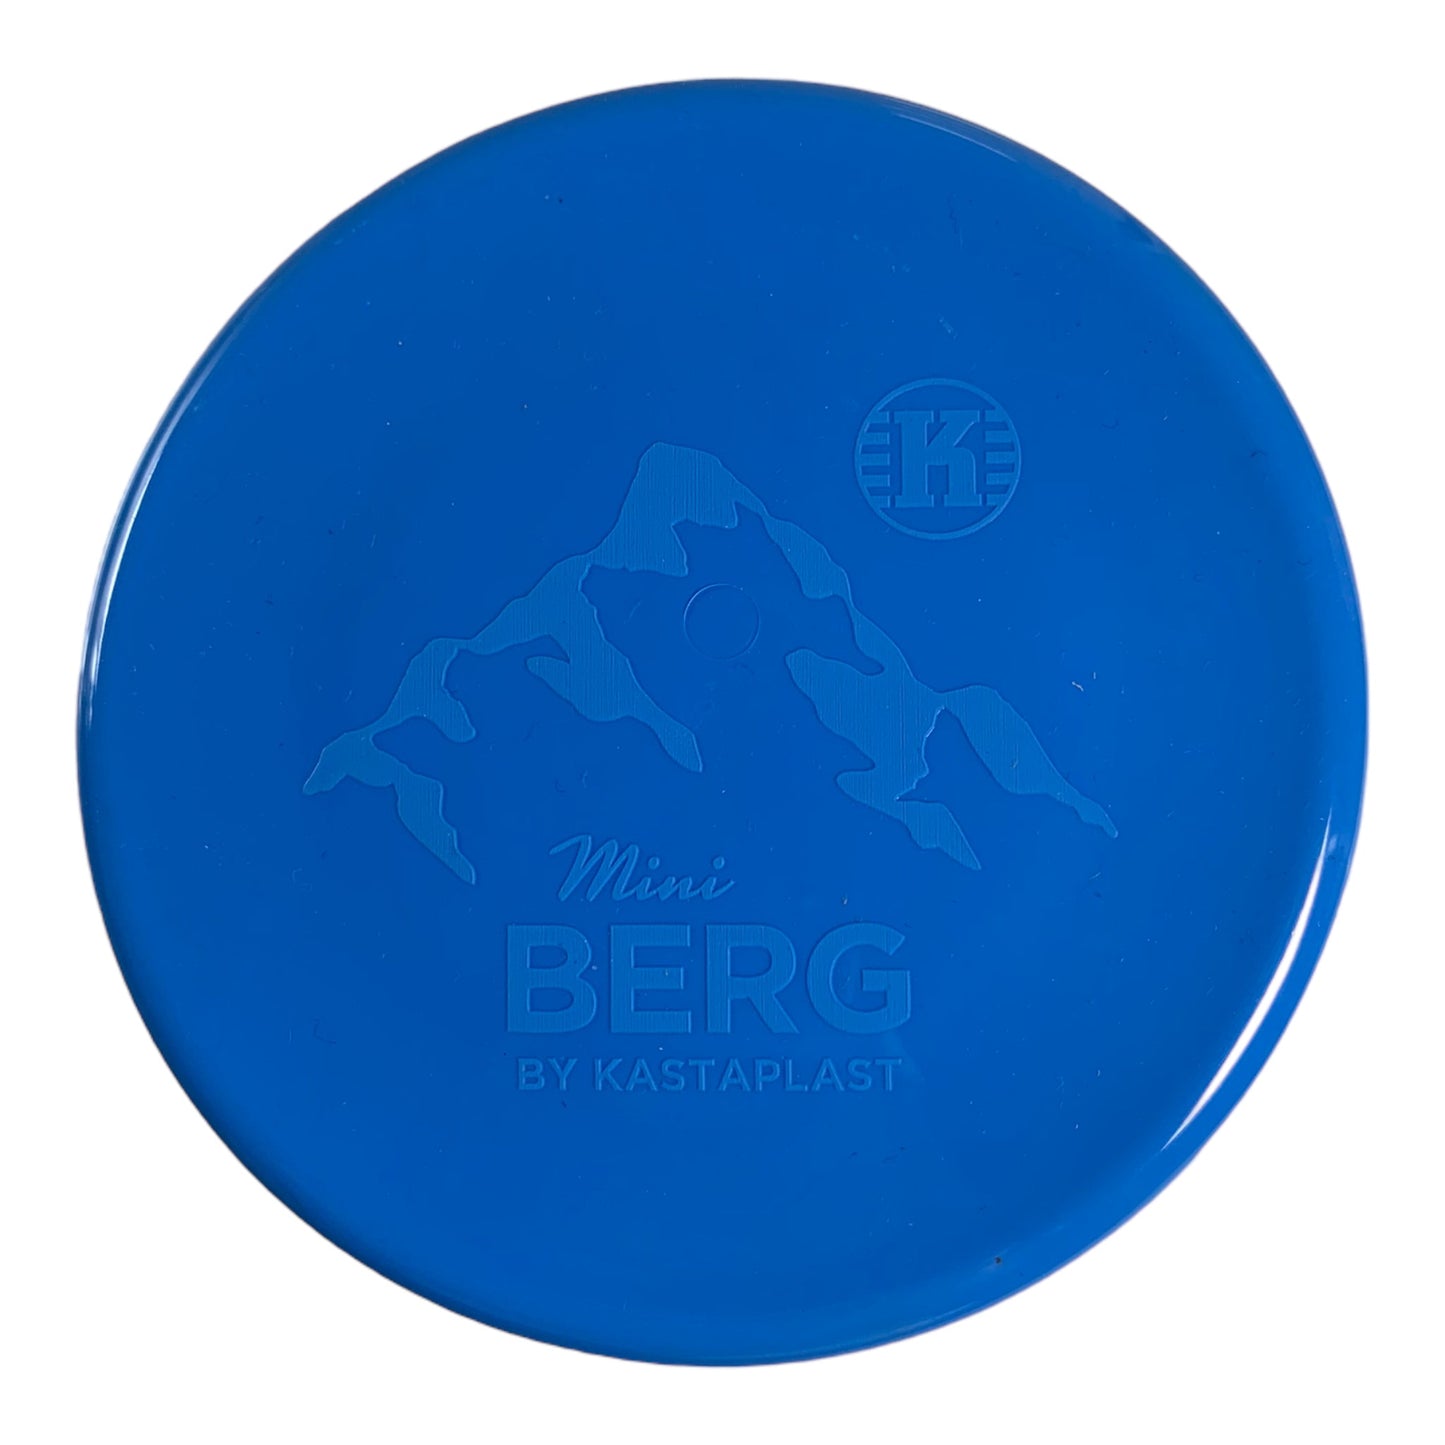 Kastaplast Kastaplast Berg Mini Marker Disc | Blue Disc Golf